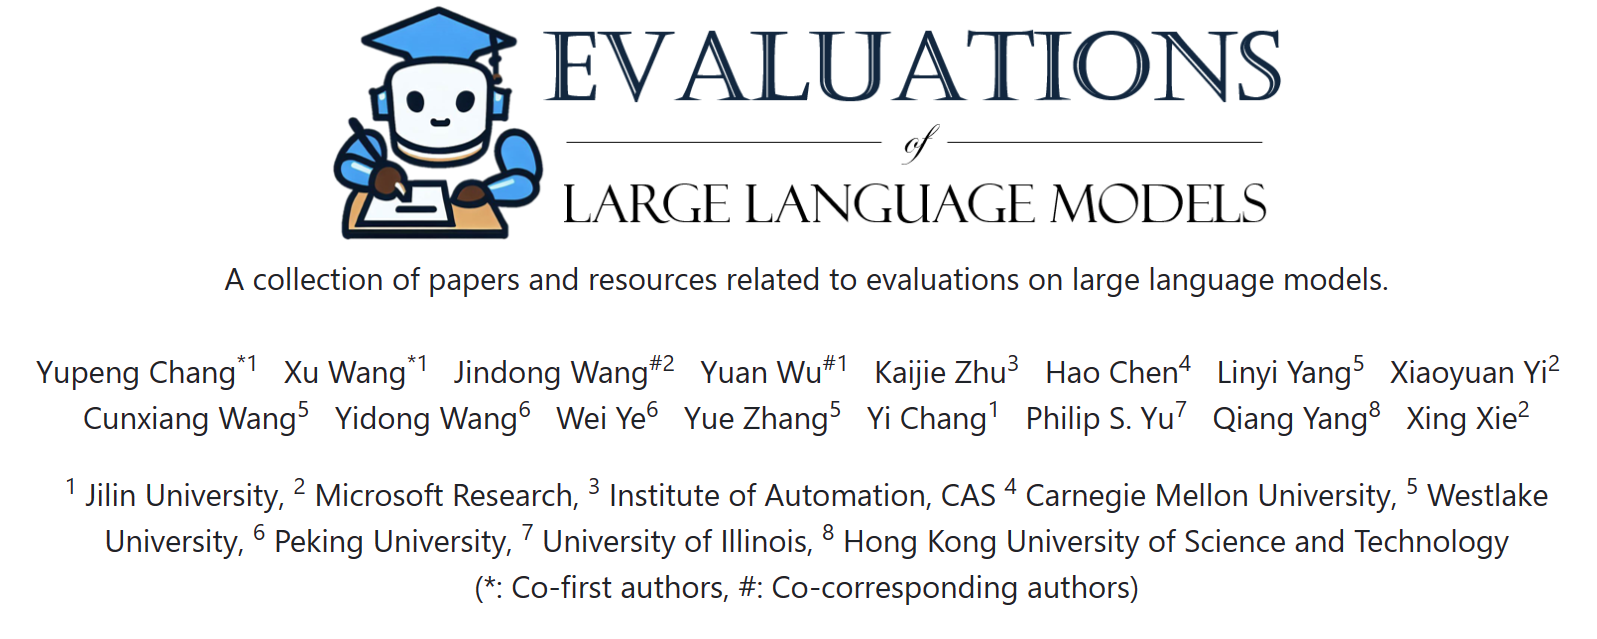 evaluation-of-large-language-models-2